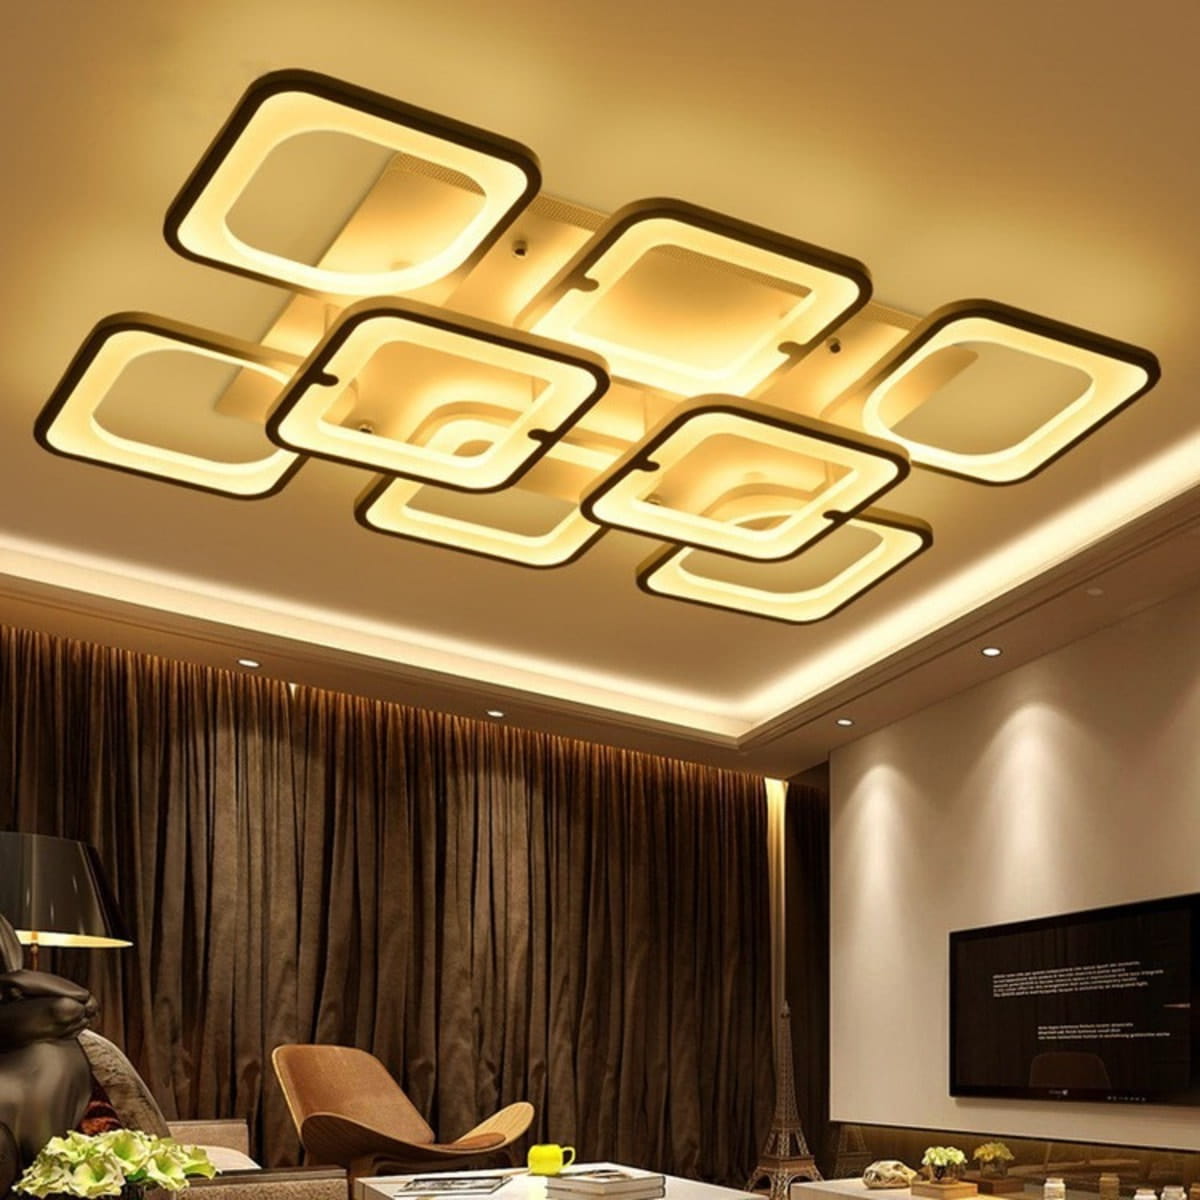 Đèn LED có khả năng tạo ra ánh sáng mềm mại, tạo điểm nhấn cho không gian, tiết kiệm năng lượng và chi phí sử dụng